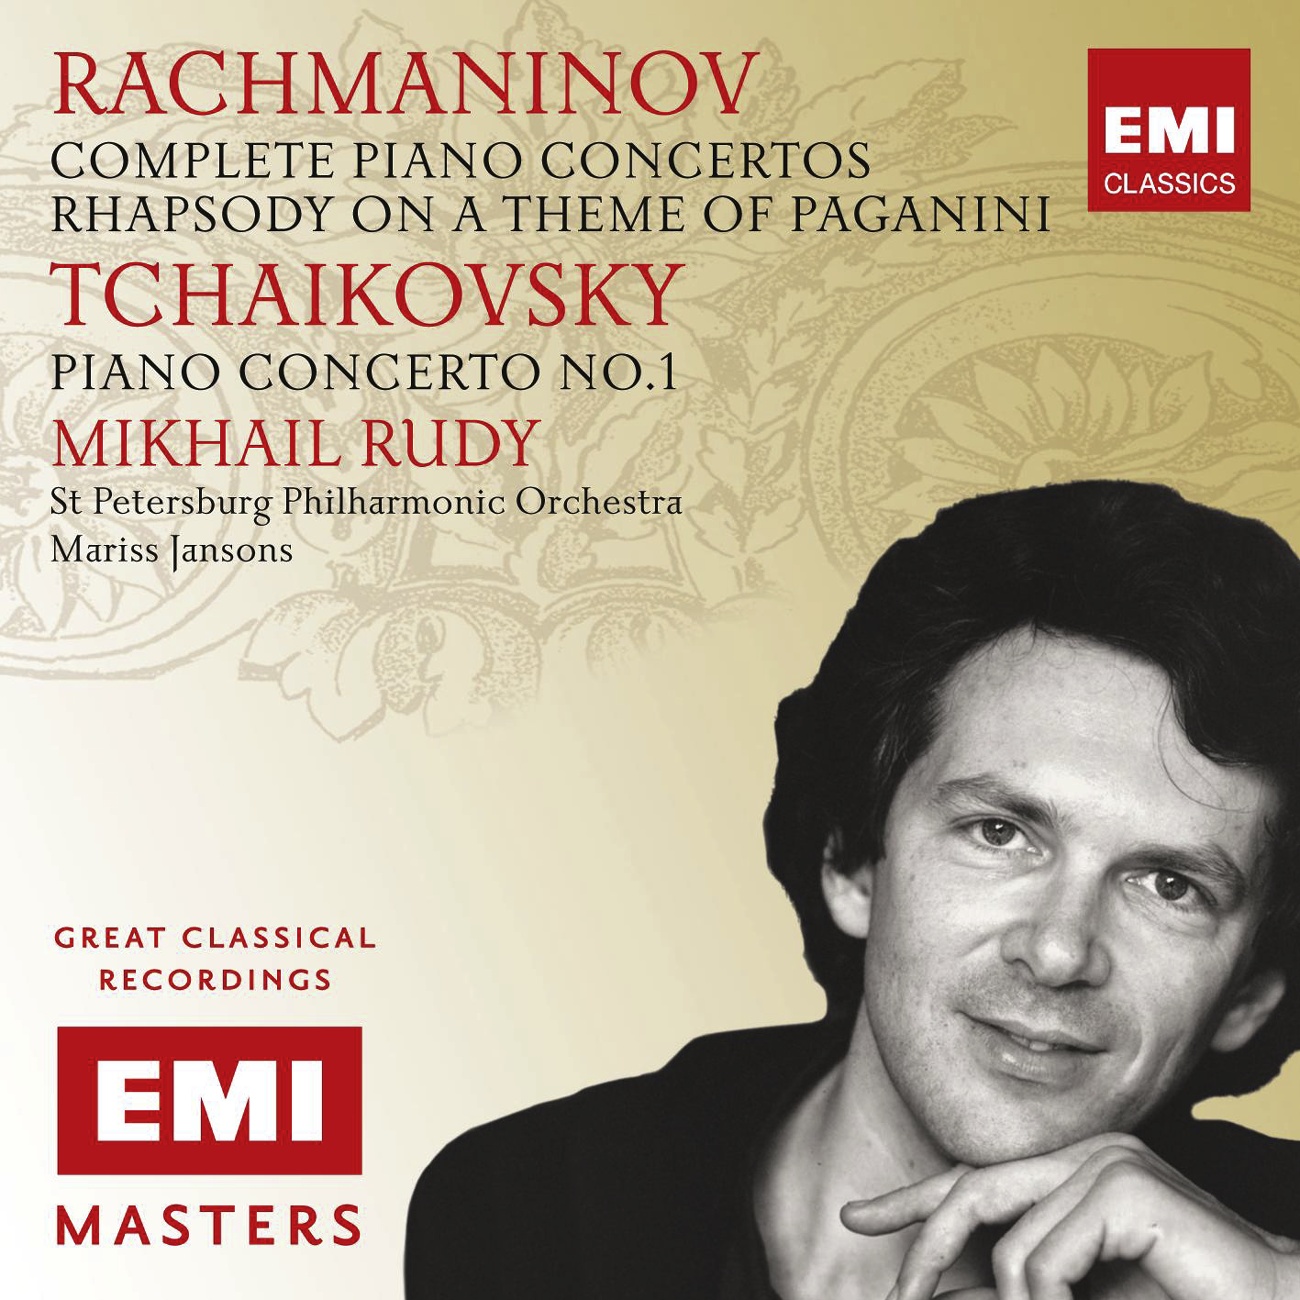 Rhapsody on a Theme of Paganini: Variation IV - piu vivo